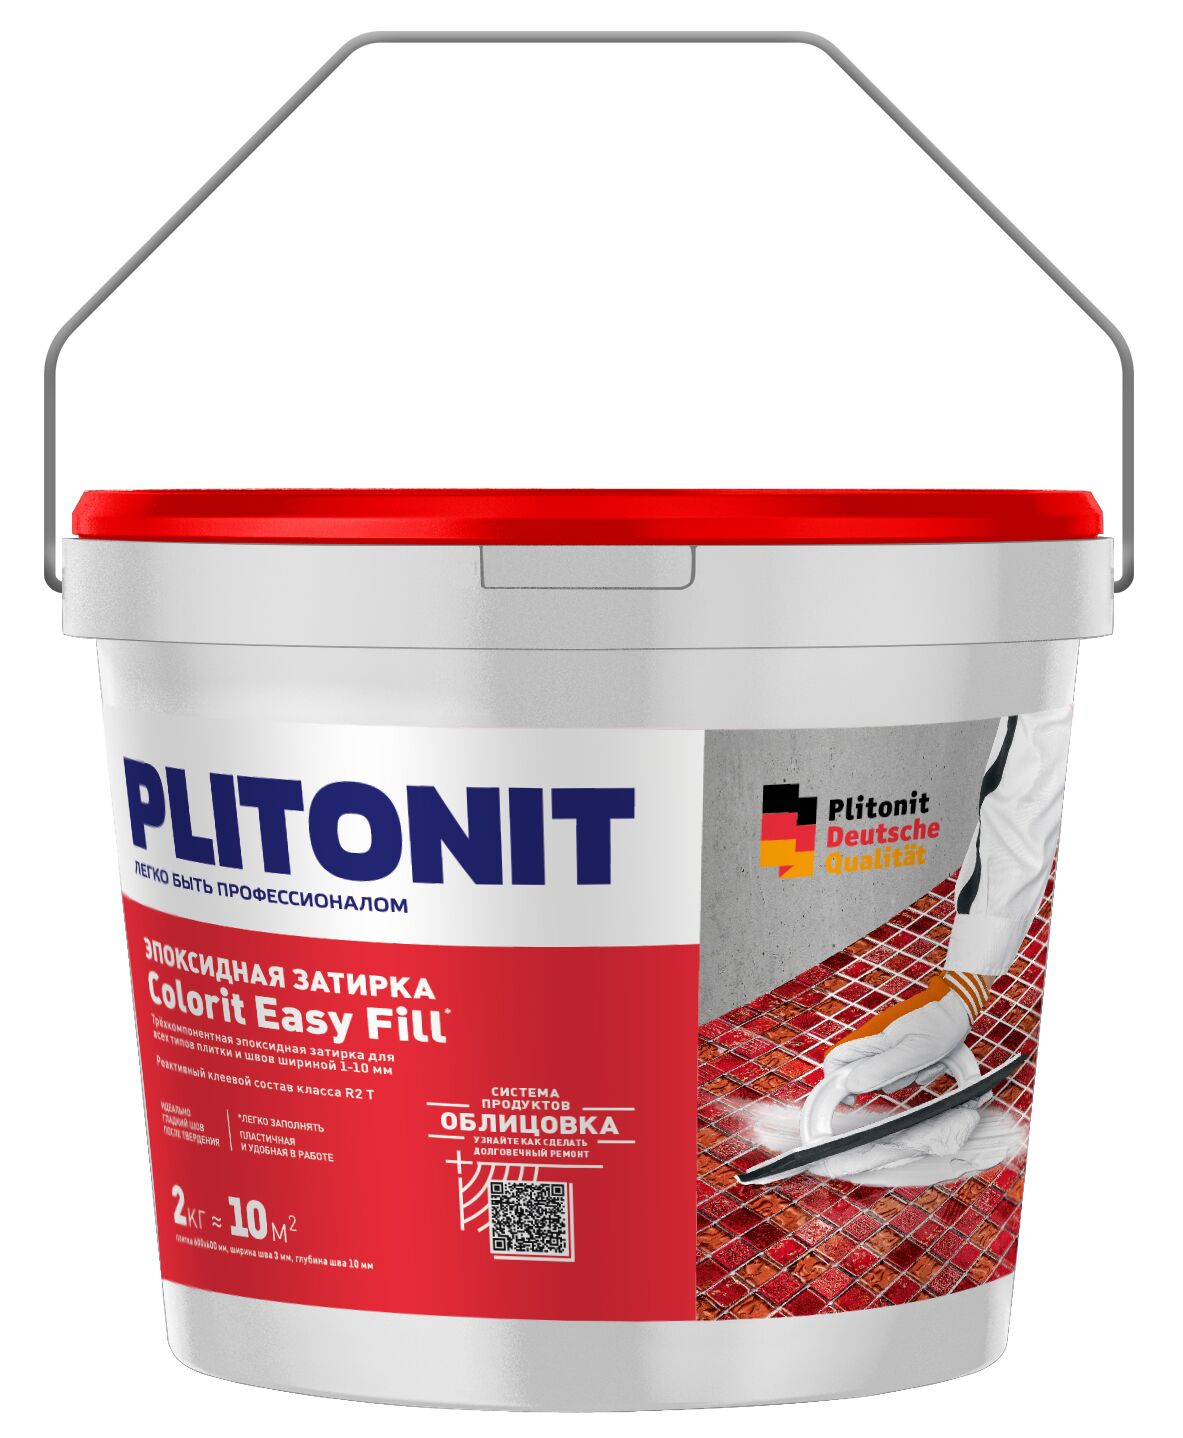 PLITONIT Colorit EasyFill ТИТАНОВЫЙ - 2 эпоксидная затирка для межплиточных швов и реактивный клей для плитки , PLITONIT Colorit EasyFill титановый - 2 эпоксидная затирка для межплиточных швов и реактивный клей для плитки 